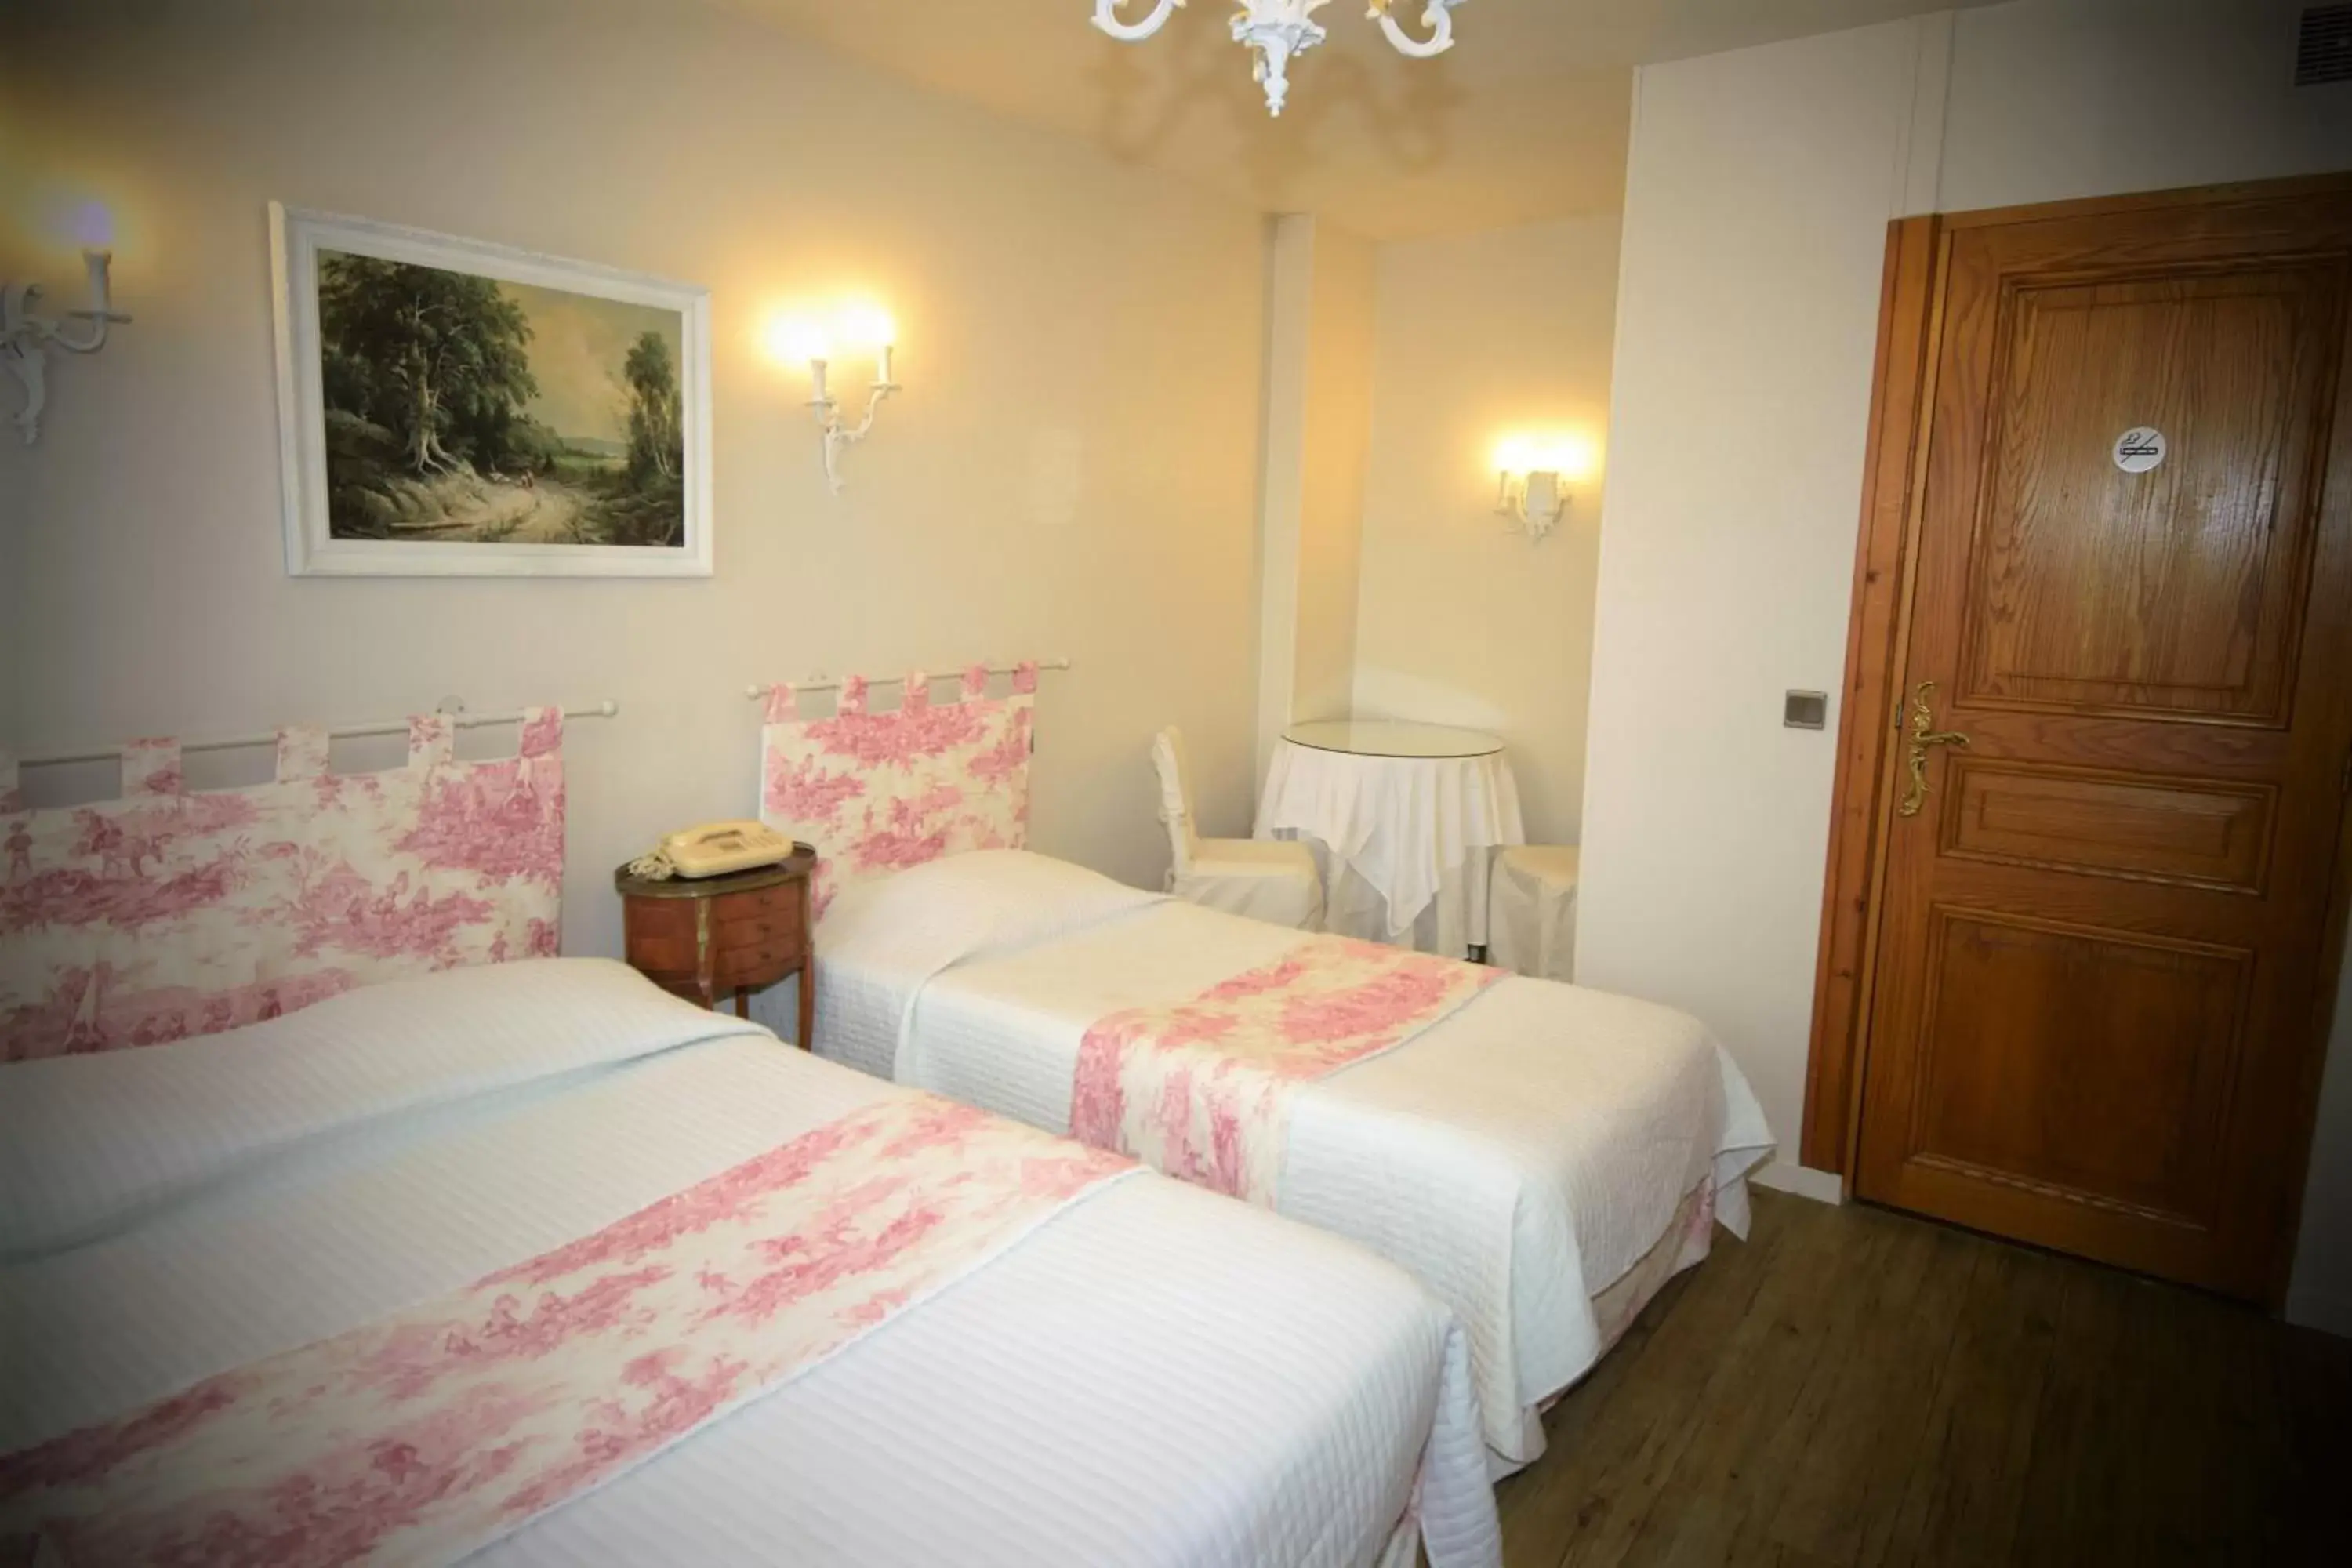 Bedroom, Room Photo in Hotel Dandy Rouen centre